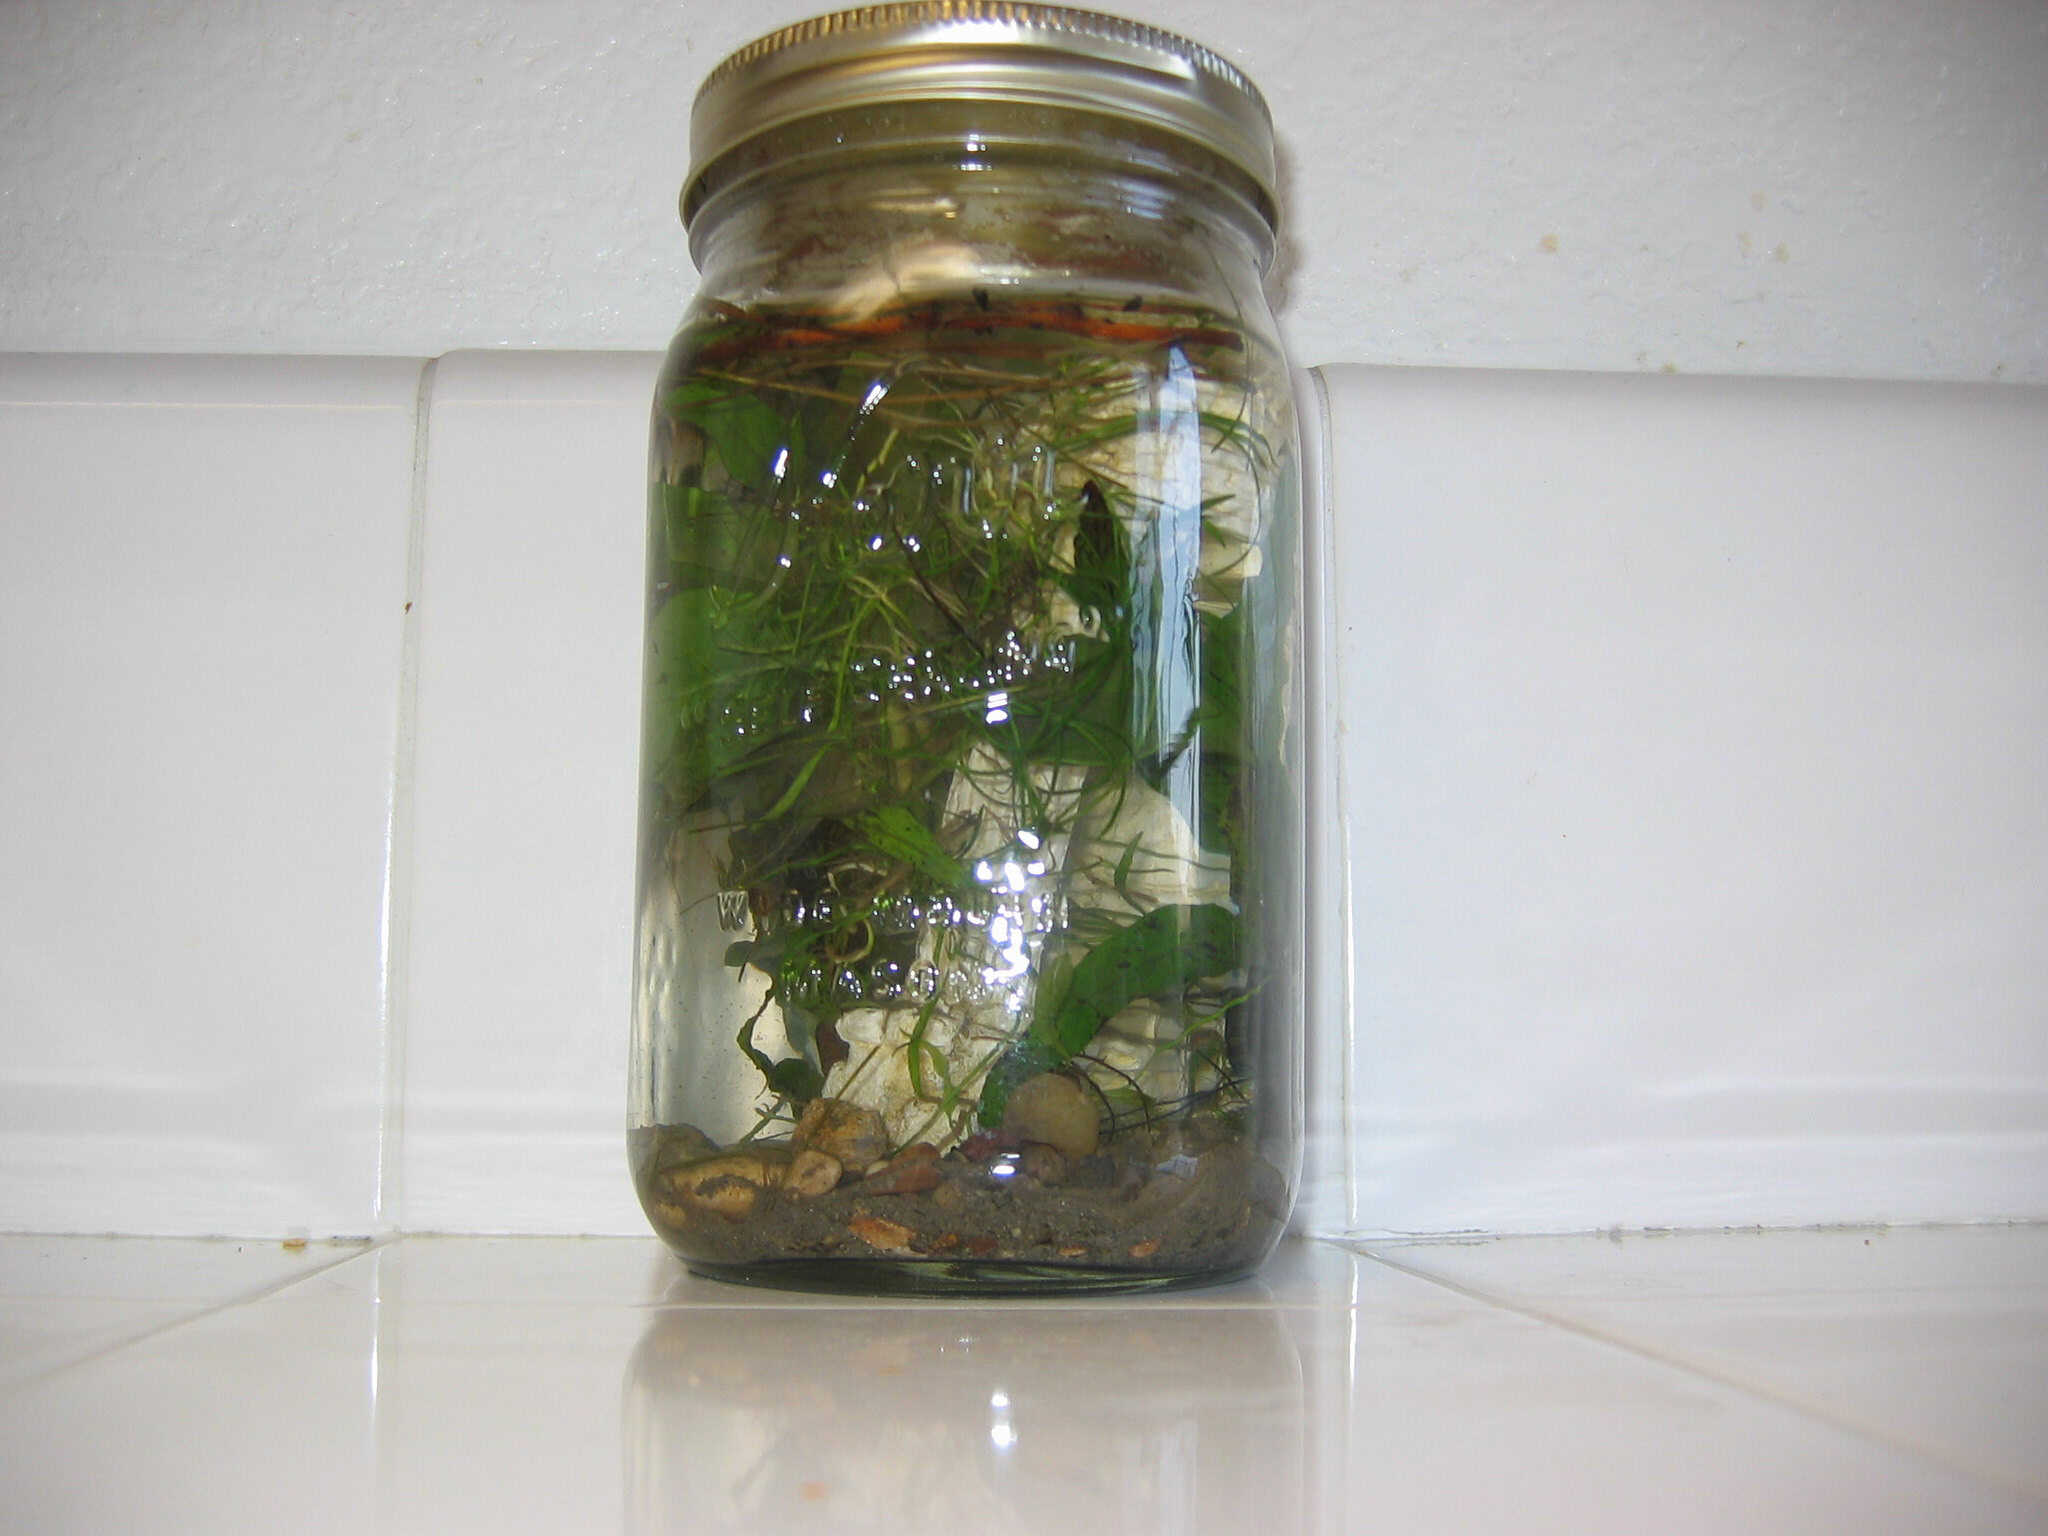 biosphere in a jar